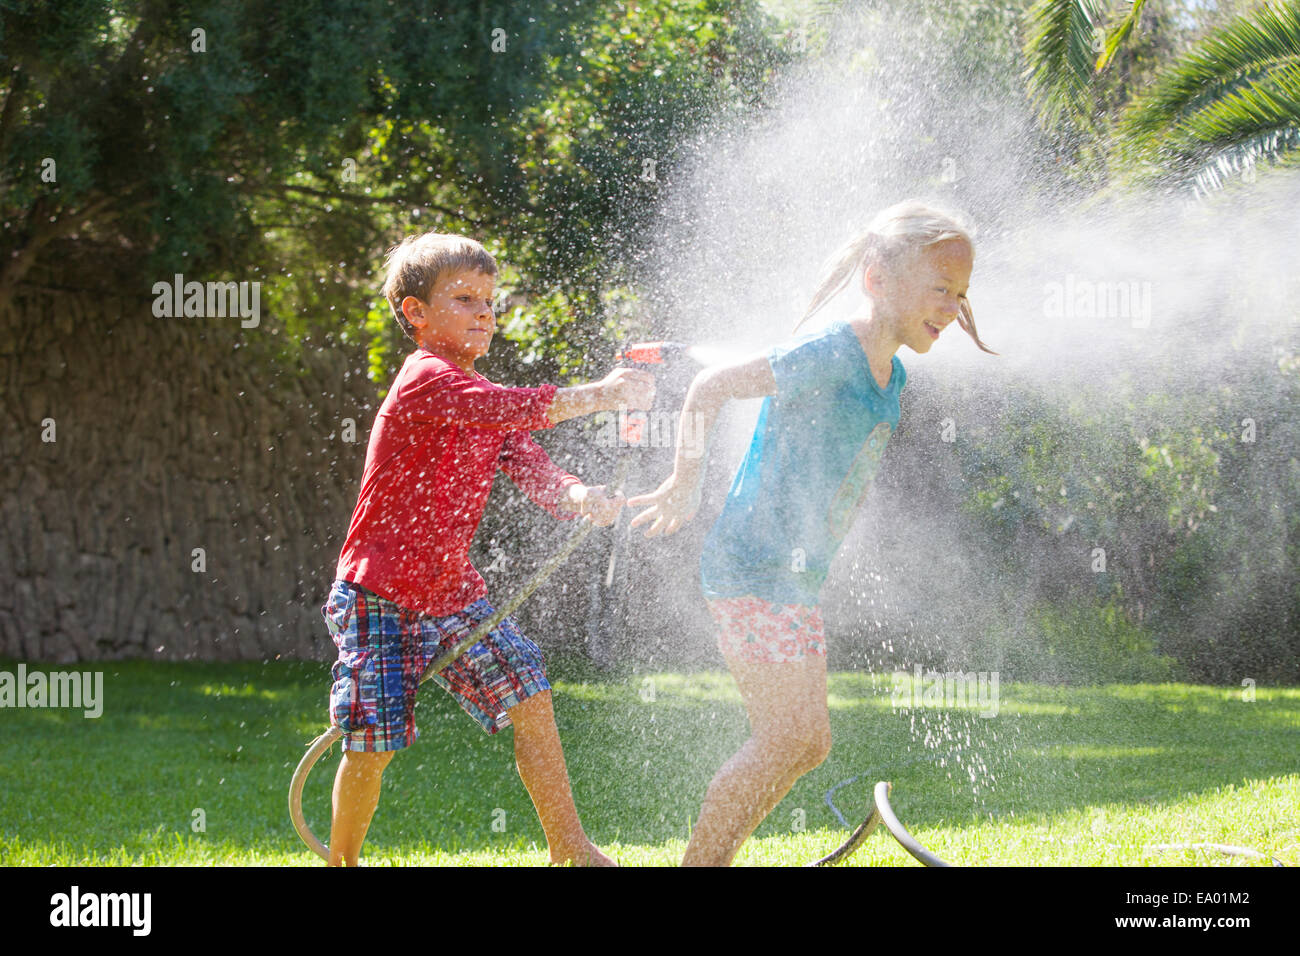 Boy spritzt Mädchen im Garten mit Wasser sprinkler Stockfoto